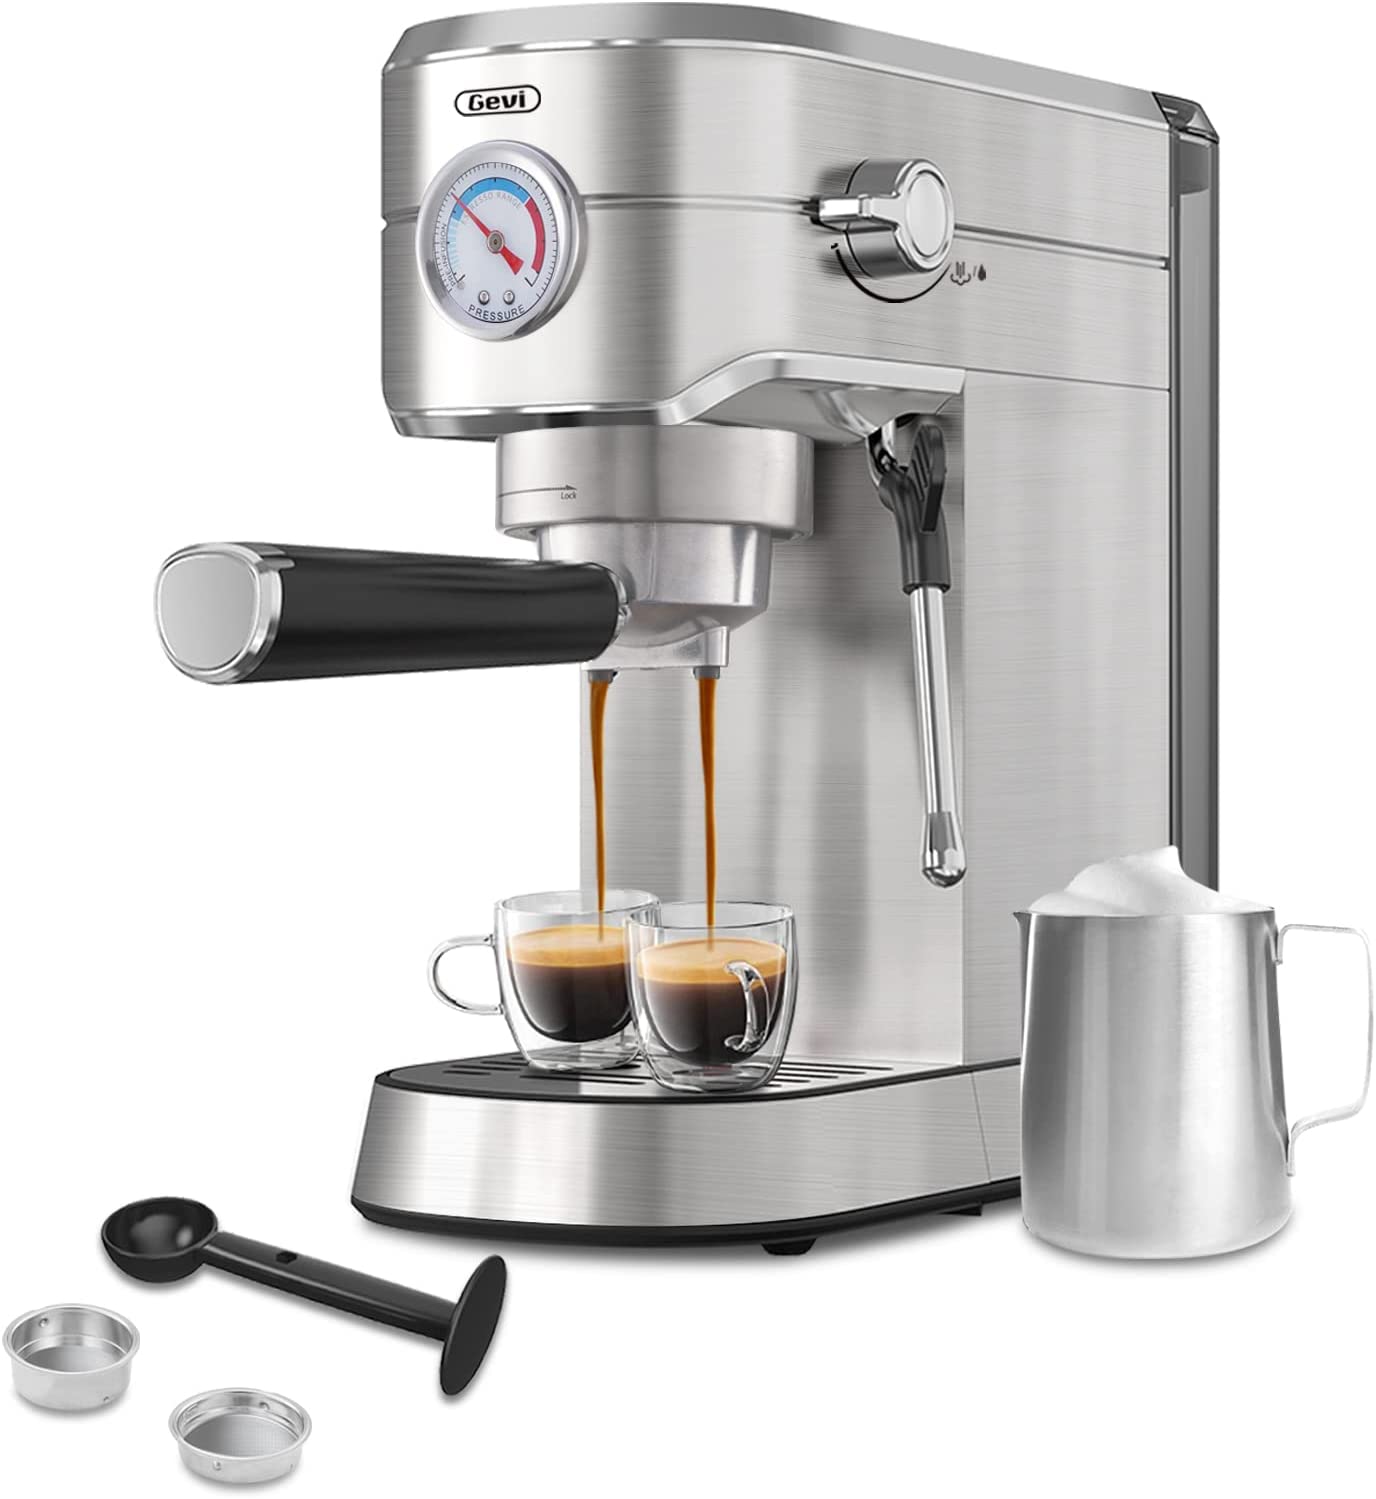 Gevi 2-1 Adjustable Steam Stainless Steel Espresso Machine